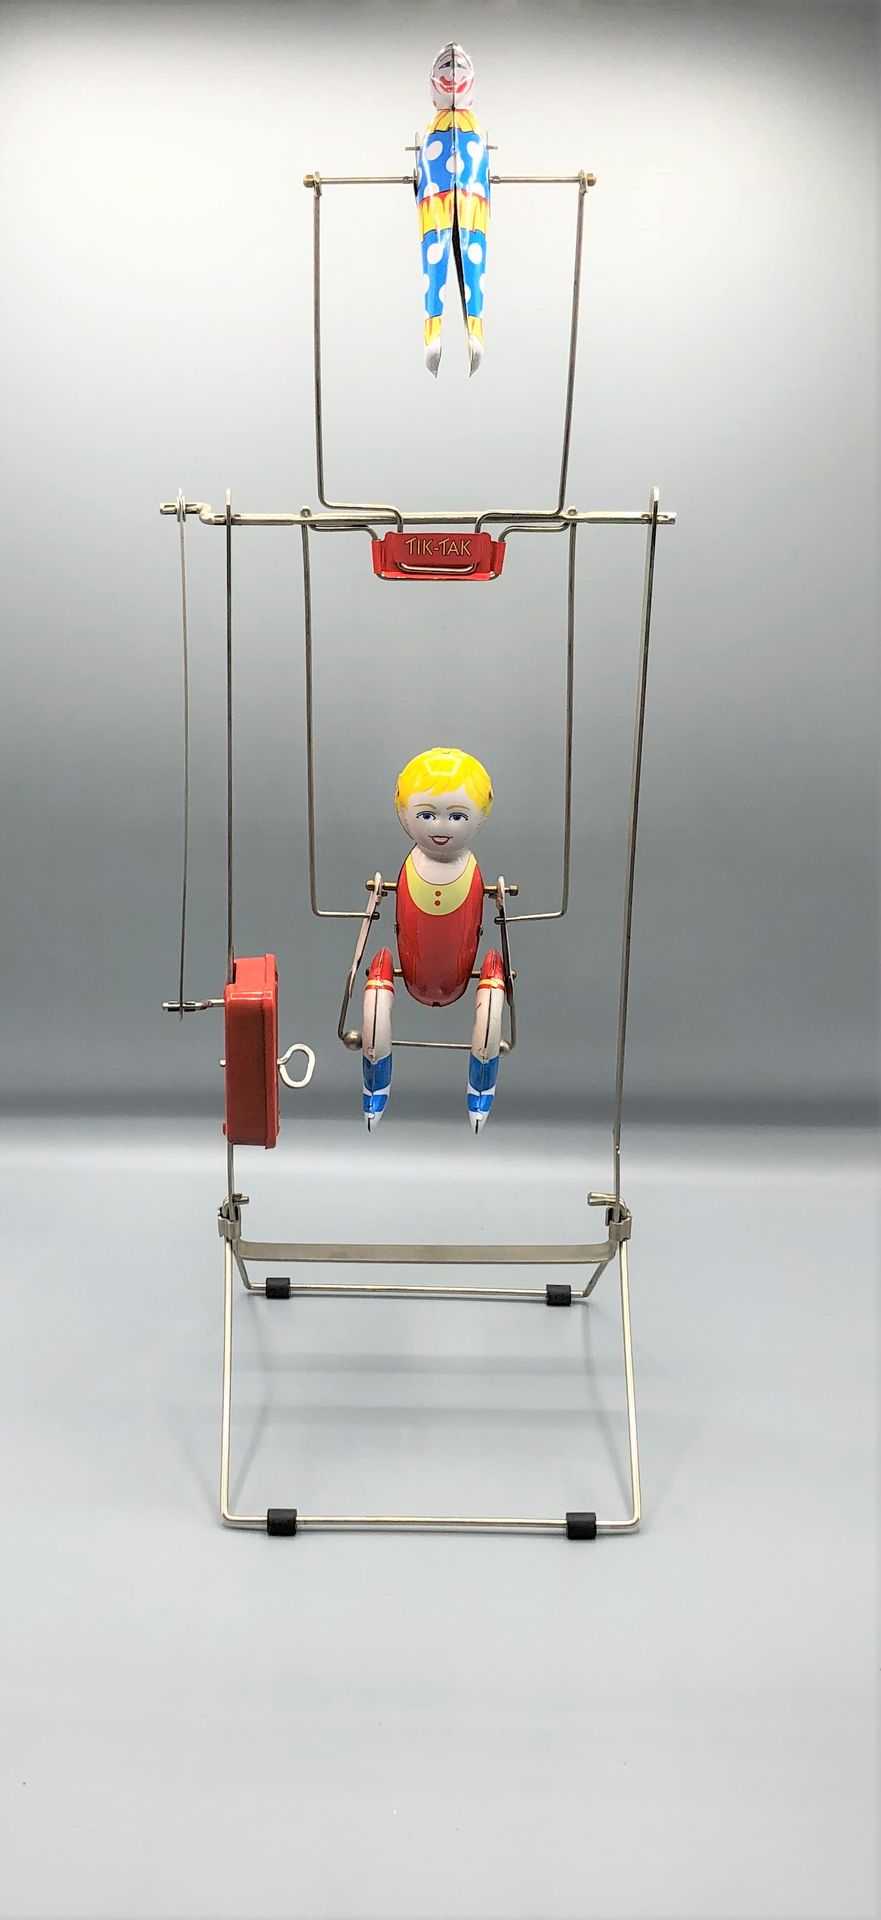 Null ǞǞǞ

以两个杂技演员在铁梯上做圆周运动为主题的机械玩具

1950 - 1960



使用条件

更多信息请联系该研究。